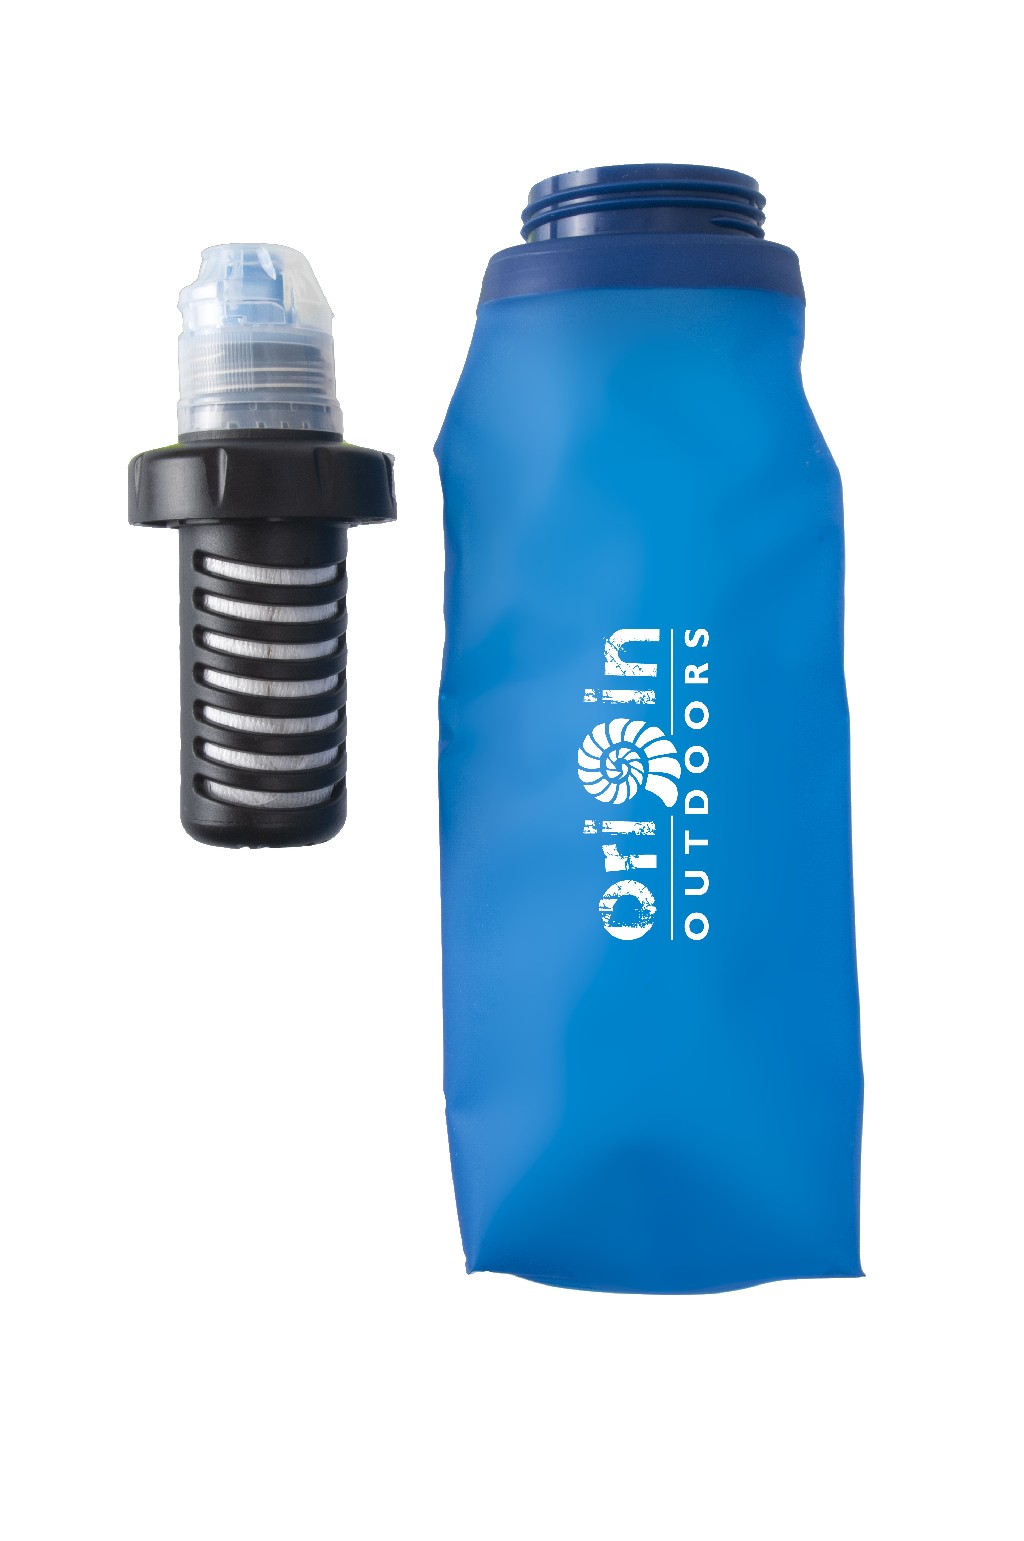 Origin Outdoors Wasserfilter Dawson Wasser Filter Trinkflasche Reise Camping  Tour Wasseraufbereitung erhältlich bei